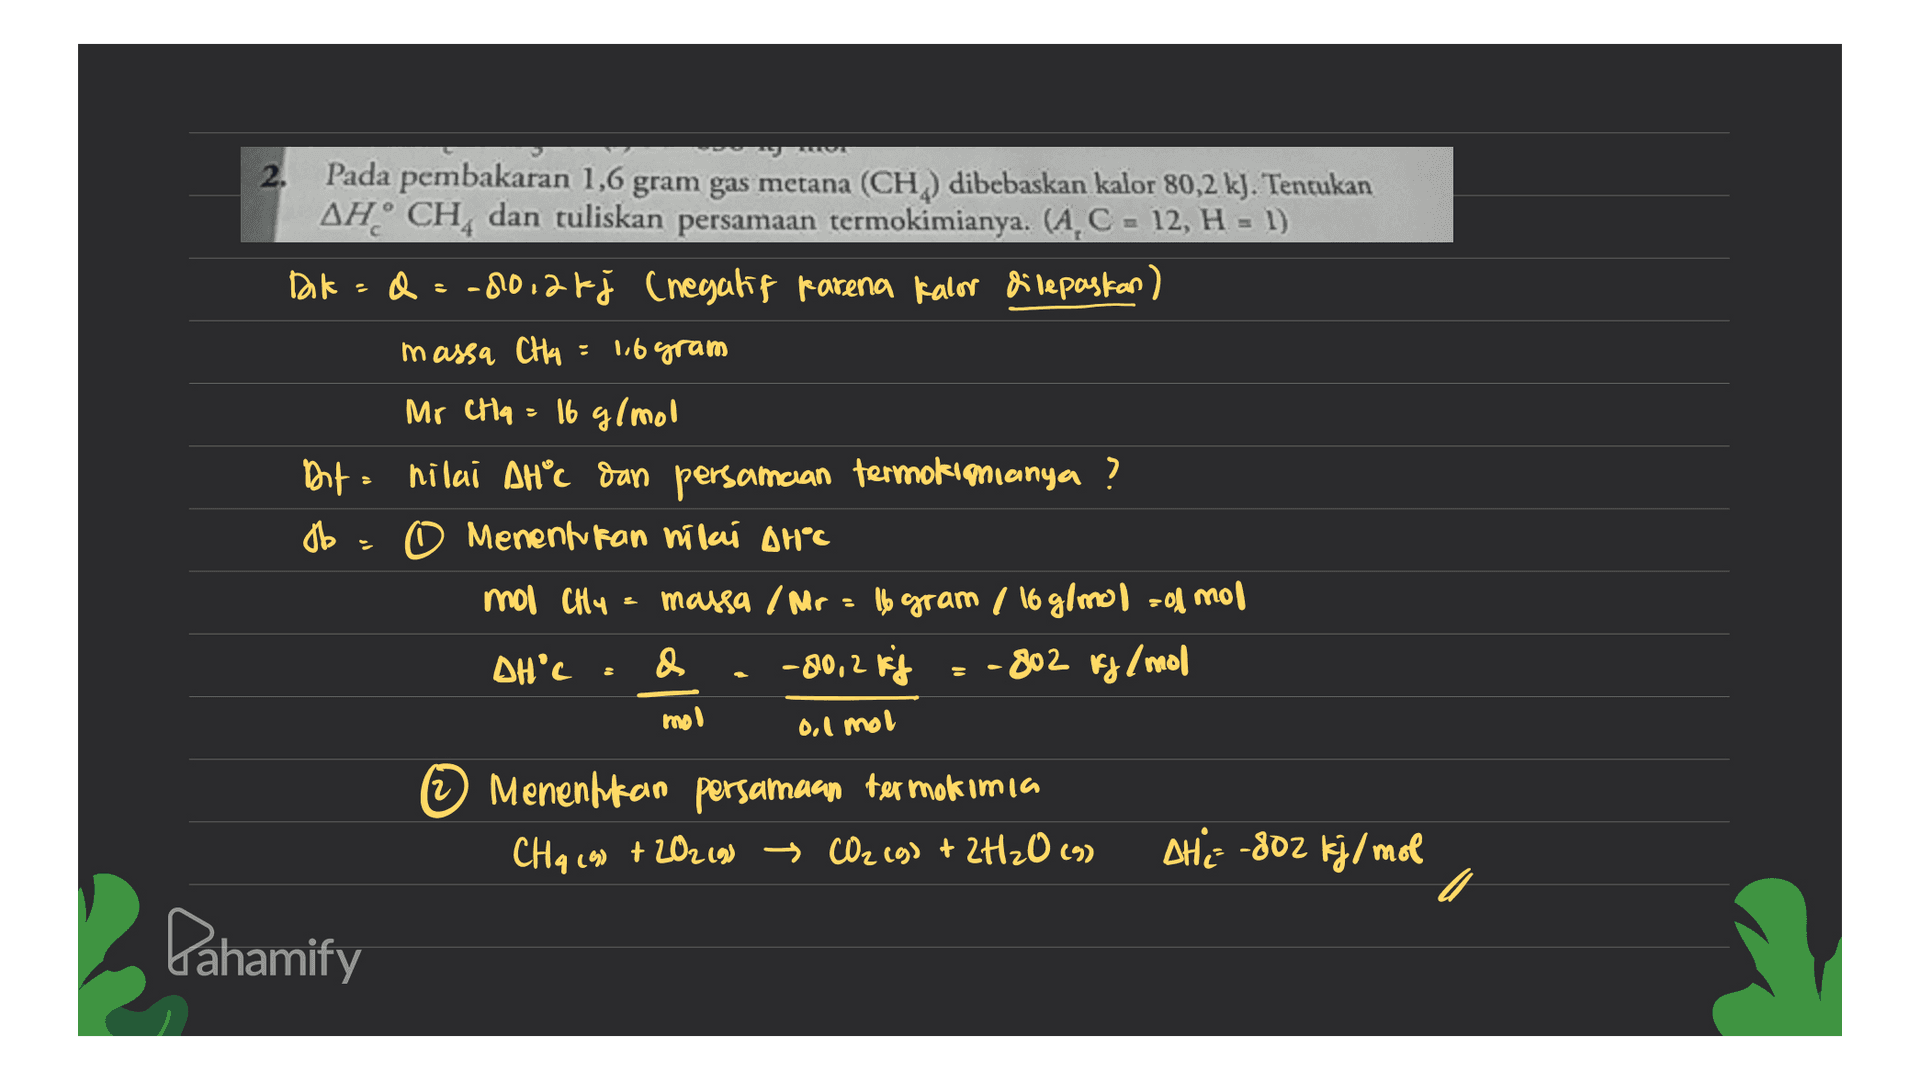 2. Pada pembakaran 1,6 gram gas metana (CH) dibebaskan kalor 80,2 kJ. Tentukan AH CH, dan tuliskan persamaan termokimianya. (A, C = 12, H = 1) Dok = = -80,26j (negatif karena kalor dilepaskan) massa CH4 = 16 gram Mr Cha = 16 g/mol Dat hilai AHC dan persamcian termokimianya ? db. O Menentukan nilai AHⓇC mol CHY massa / Mr = 16 gram / 16 g/mol = odmor DH'C & -80,2 kg - 802 kg/mol mol 0,1 mol © Menenhkan persamaan termokimia CHq (90 + 202 (9) → CO2(g) + 2H2O (9) + THE -802 kj/mol c Pahamify 